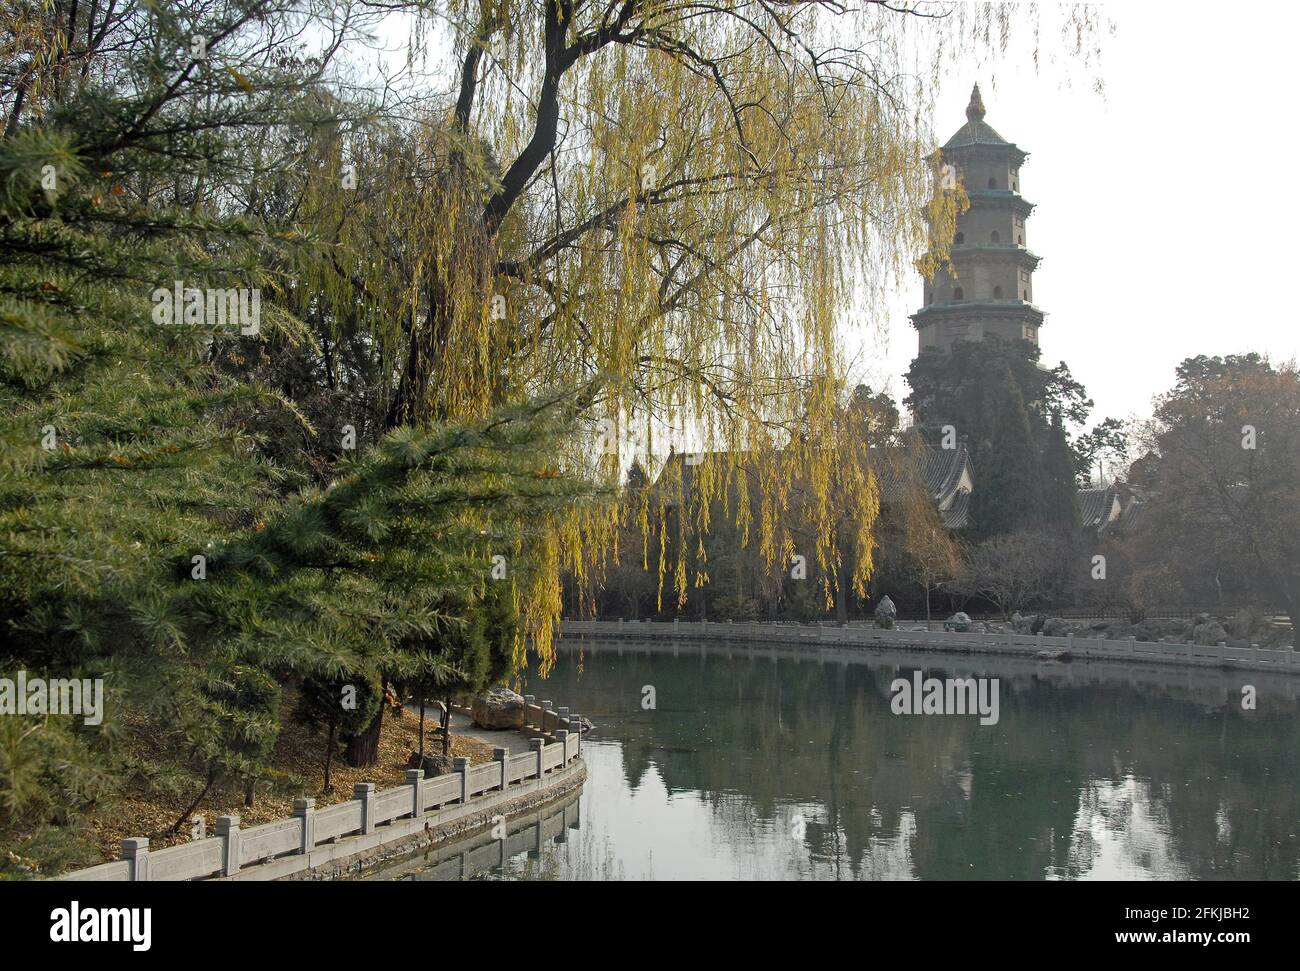 Temple Jinci près de Taiyuan, Shanxi , Chine. Vue sur la pagode du temple de Jinci en regardant de l'autre côté d'un lac avec un reflet de la pagode et du saule. Banque D'Images